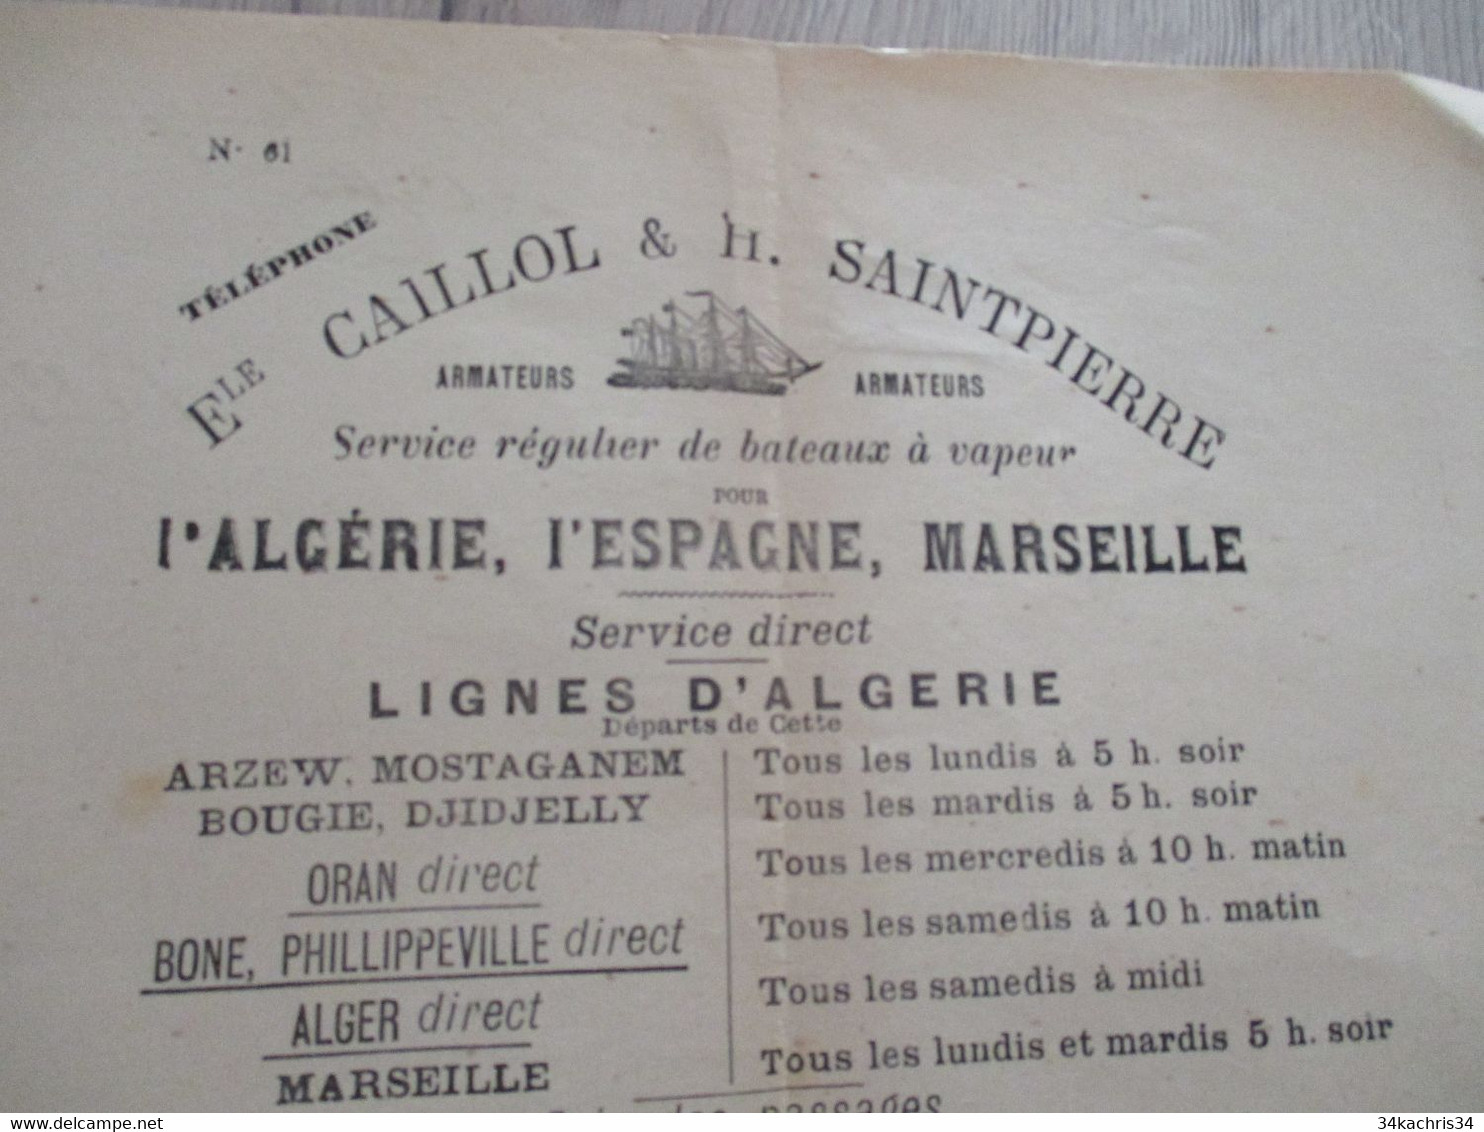 Pub Publicité Armateur Caillol SaintPierre Service Bateaux Vapeur Algérie Espagne Marseille Imprim. Cette Sète - Transports